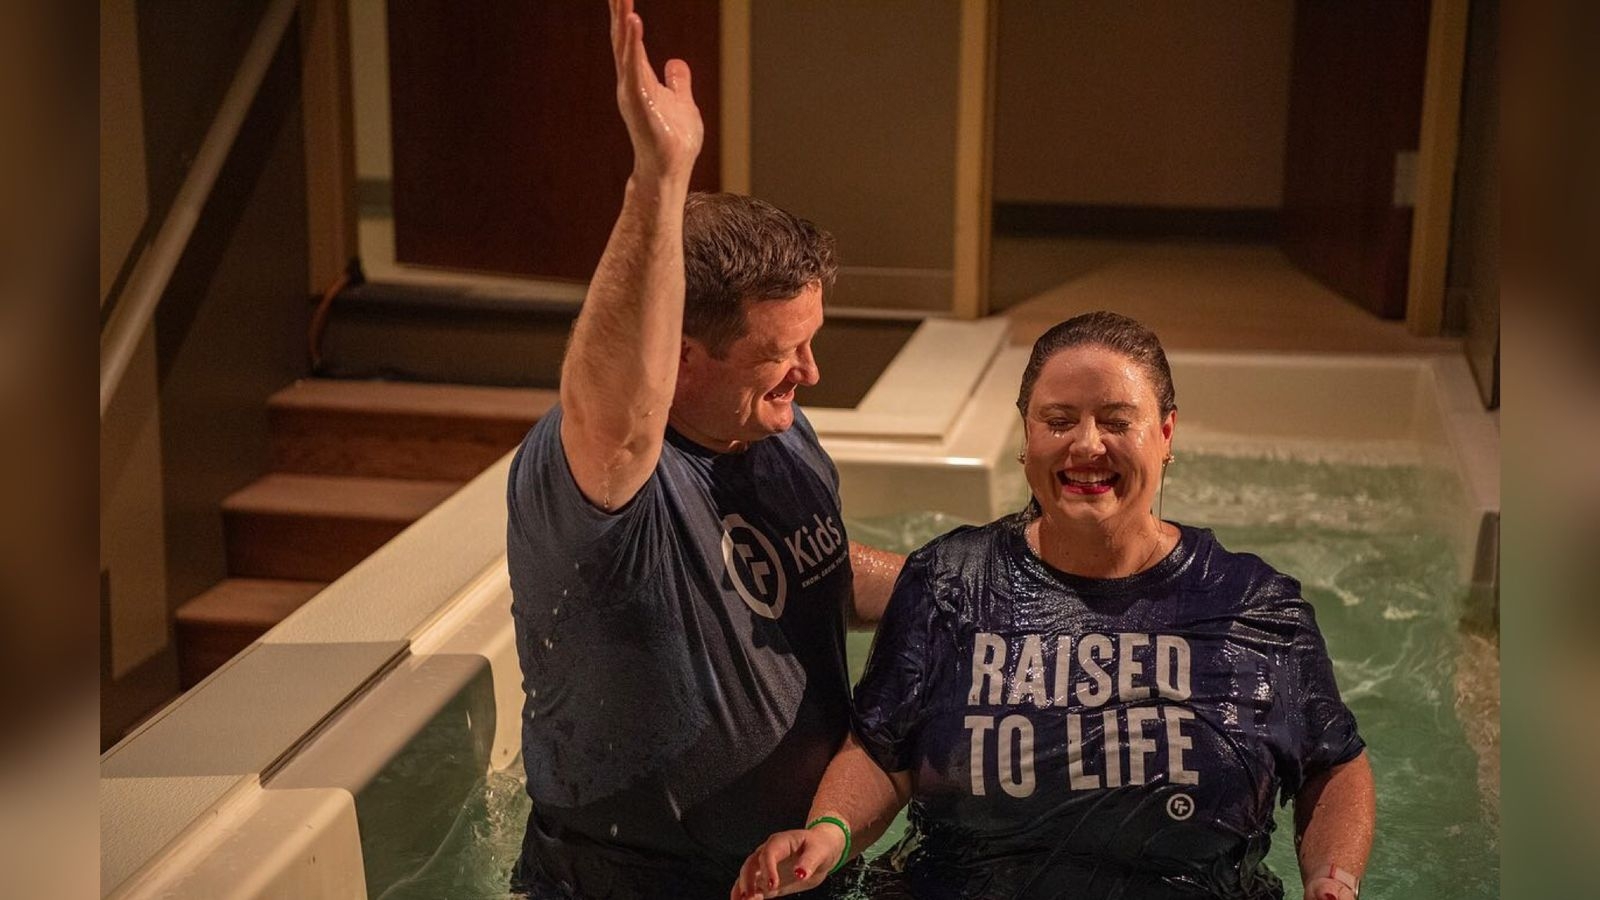 Igreja batiza mais de 100 pessoas em culto nos EUA: “Deus está fazendo algo especial”